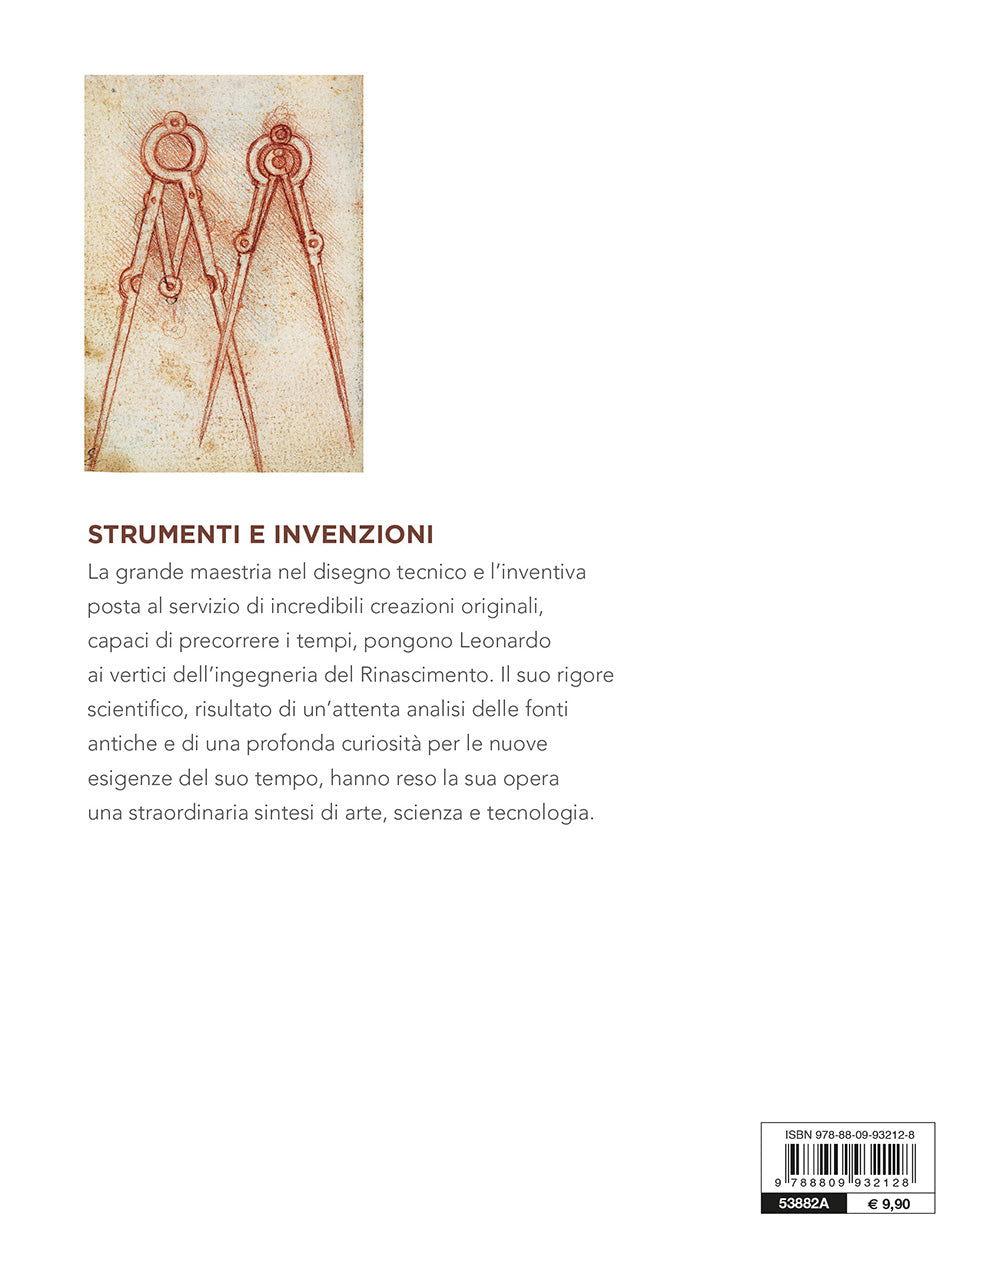 Strumenti e invenzioni::Leonardo da Vinci. Artista / scienziato